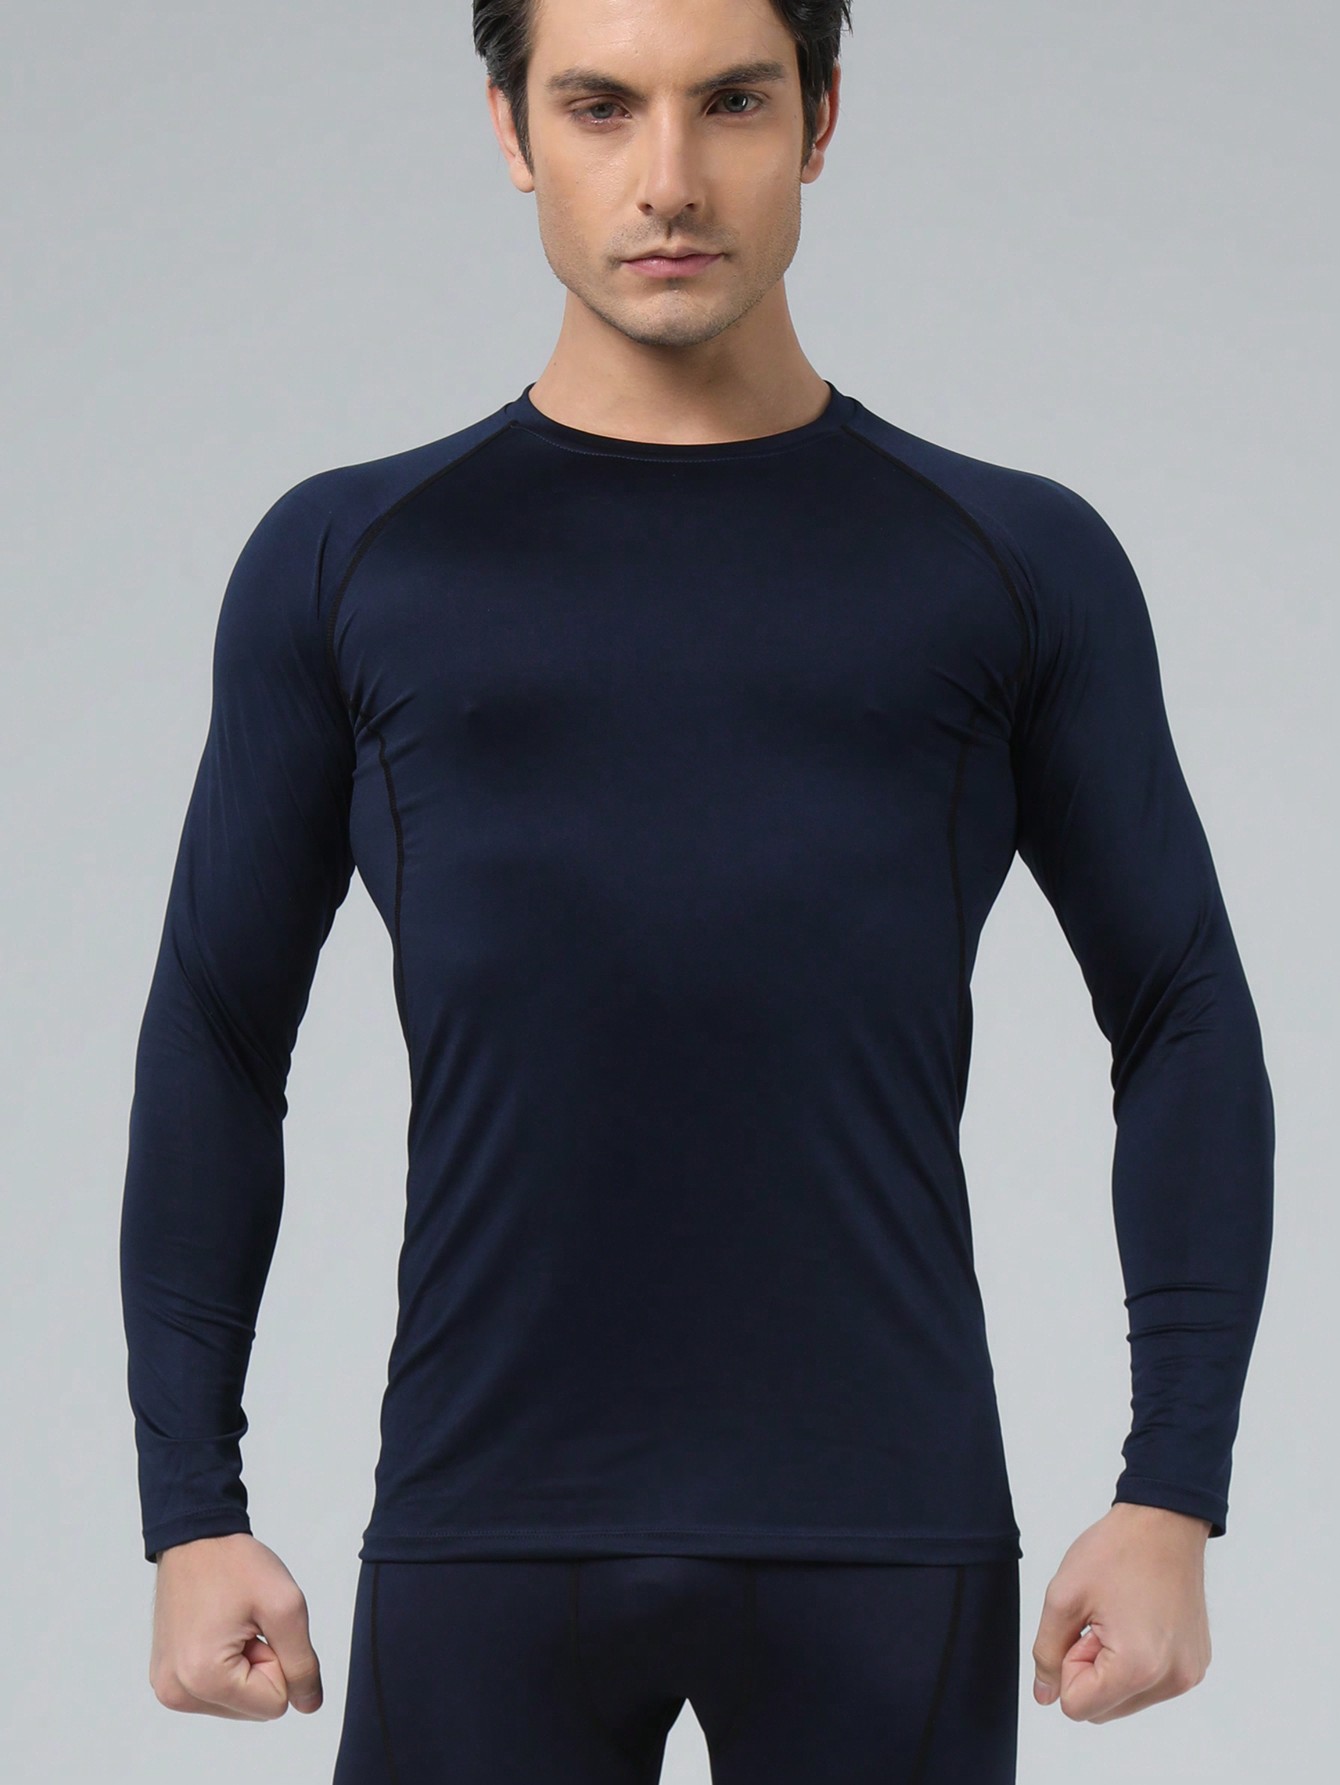 Мужская эластичная компрессионная рубашка для фитнеса с длинными рукавами, темно-синий футболка мужская быстросохнущая дышащая короткий рукав для тренировок фитнеса бодибилдинга спортзала майка для бега